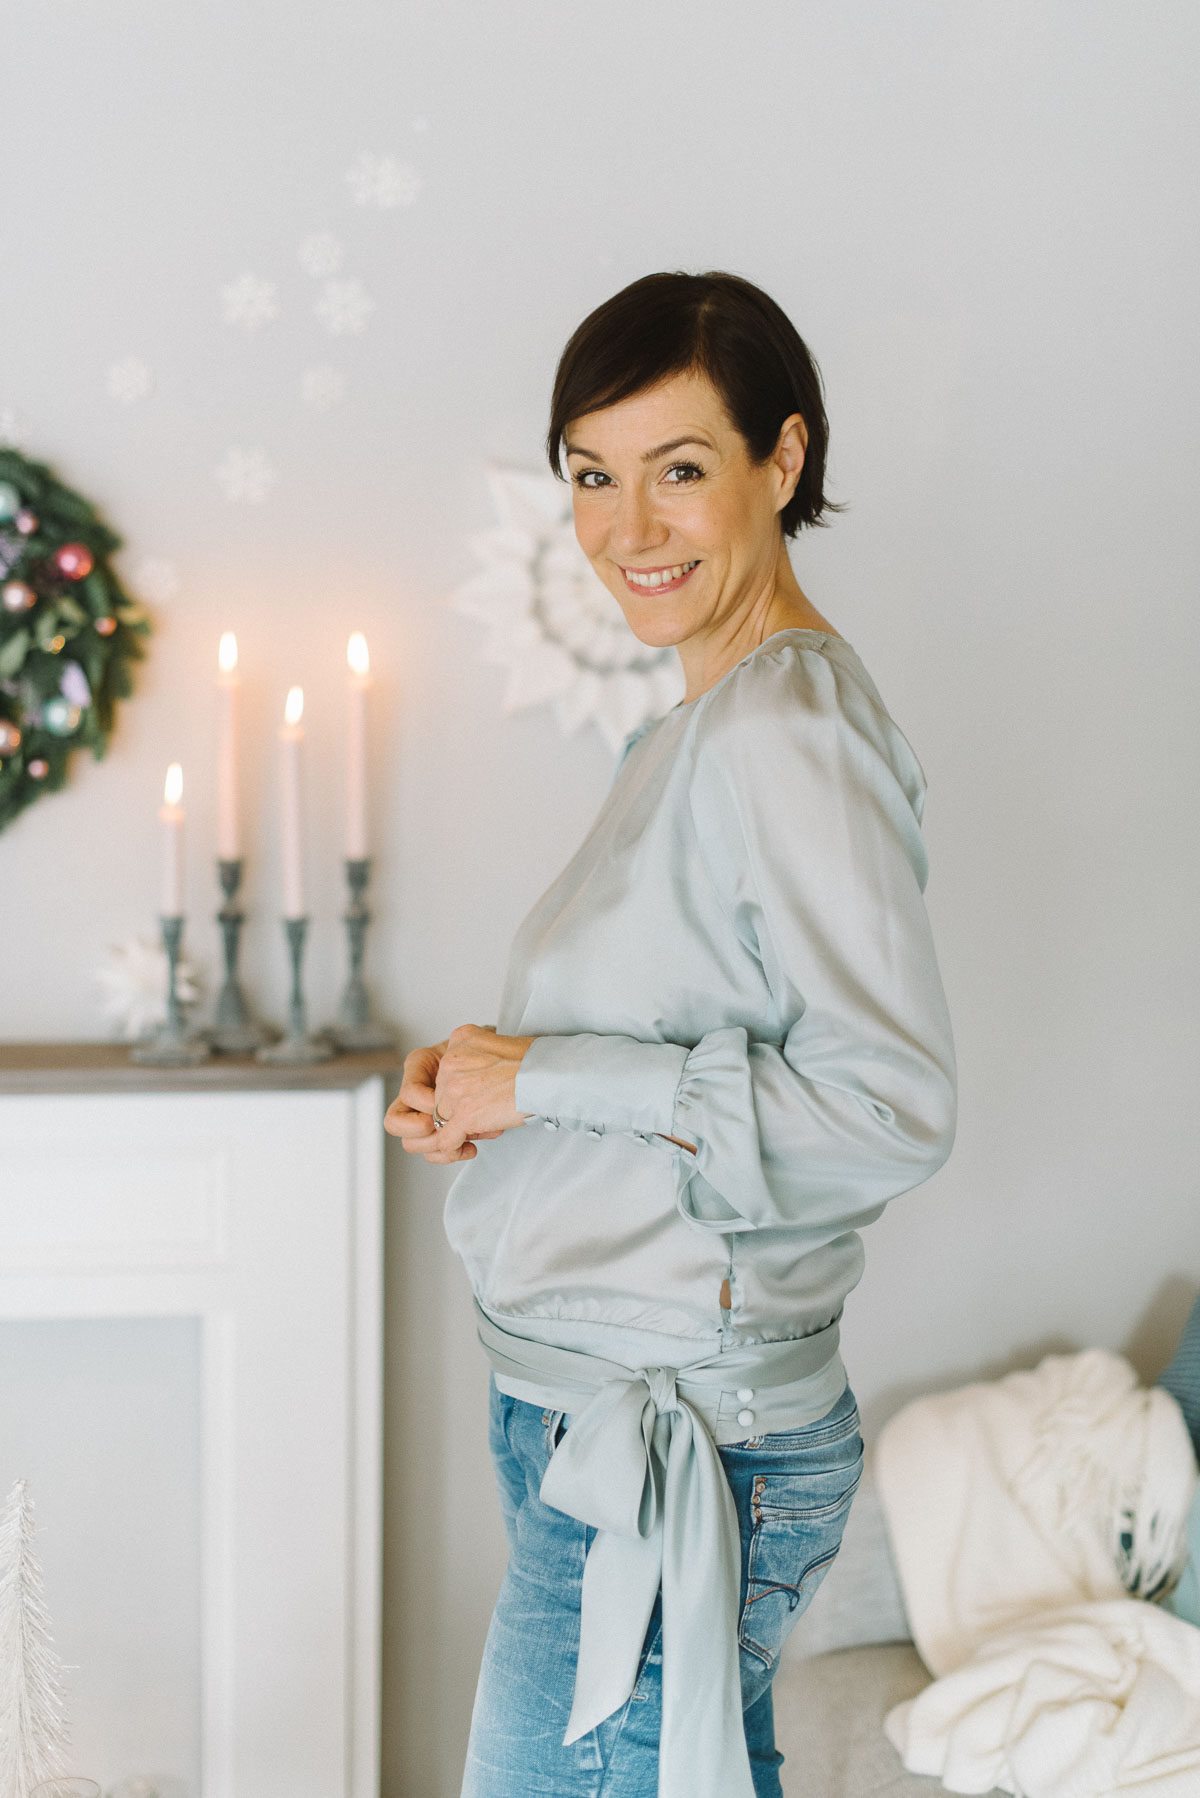 Kleine Inspiration in Sachen Mode gefällig? Gemeinsam mit der Modeflüsterin und 9 Bloggerkolleginnen zeigen wir euch die schönsten Outfits für die Festsaison Weihnachten und Silvester 2018.